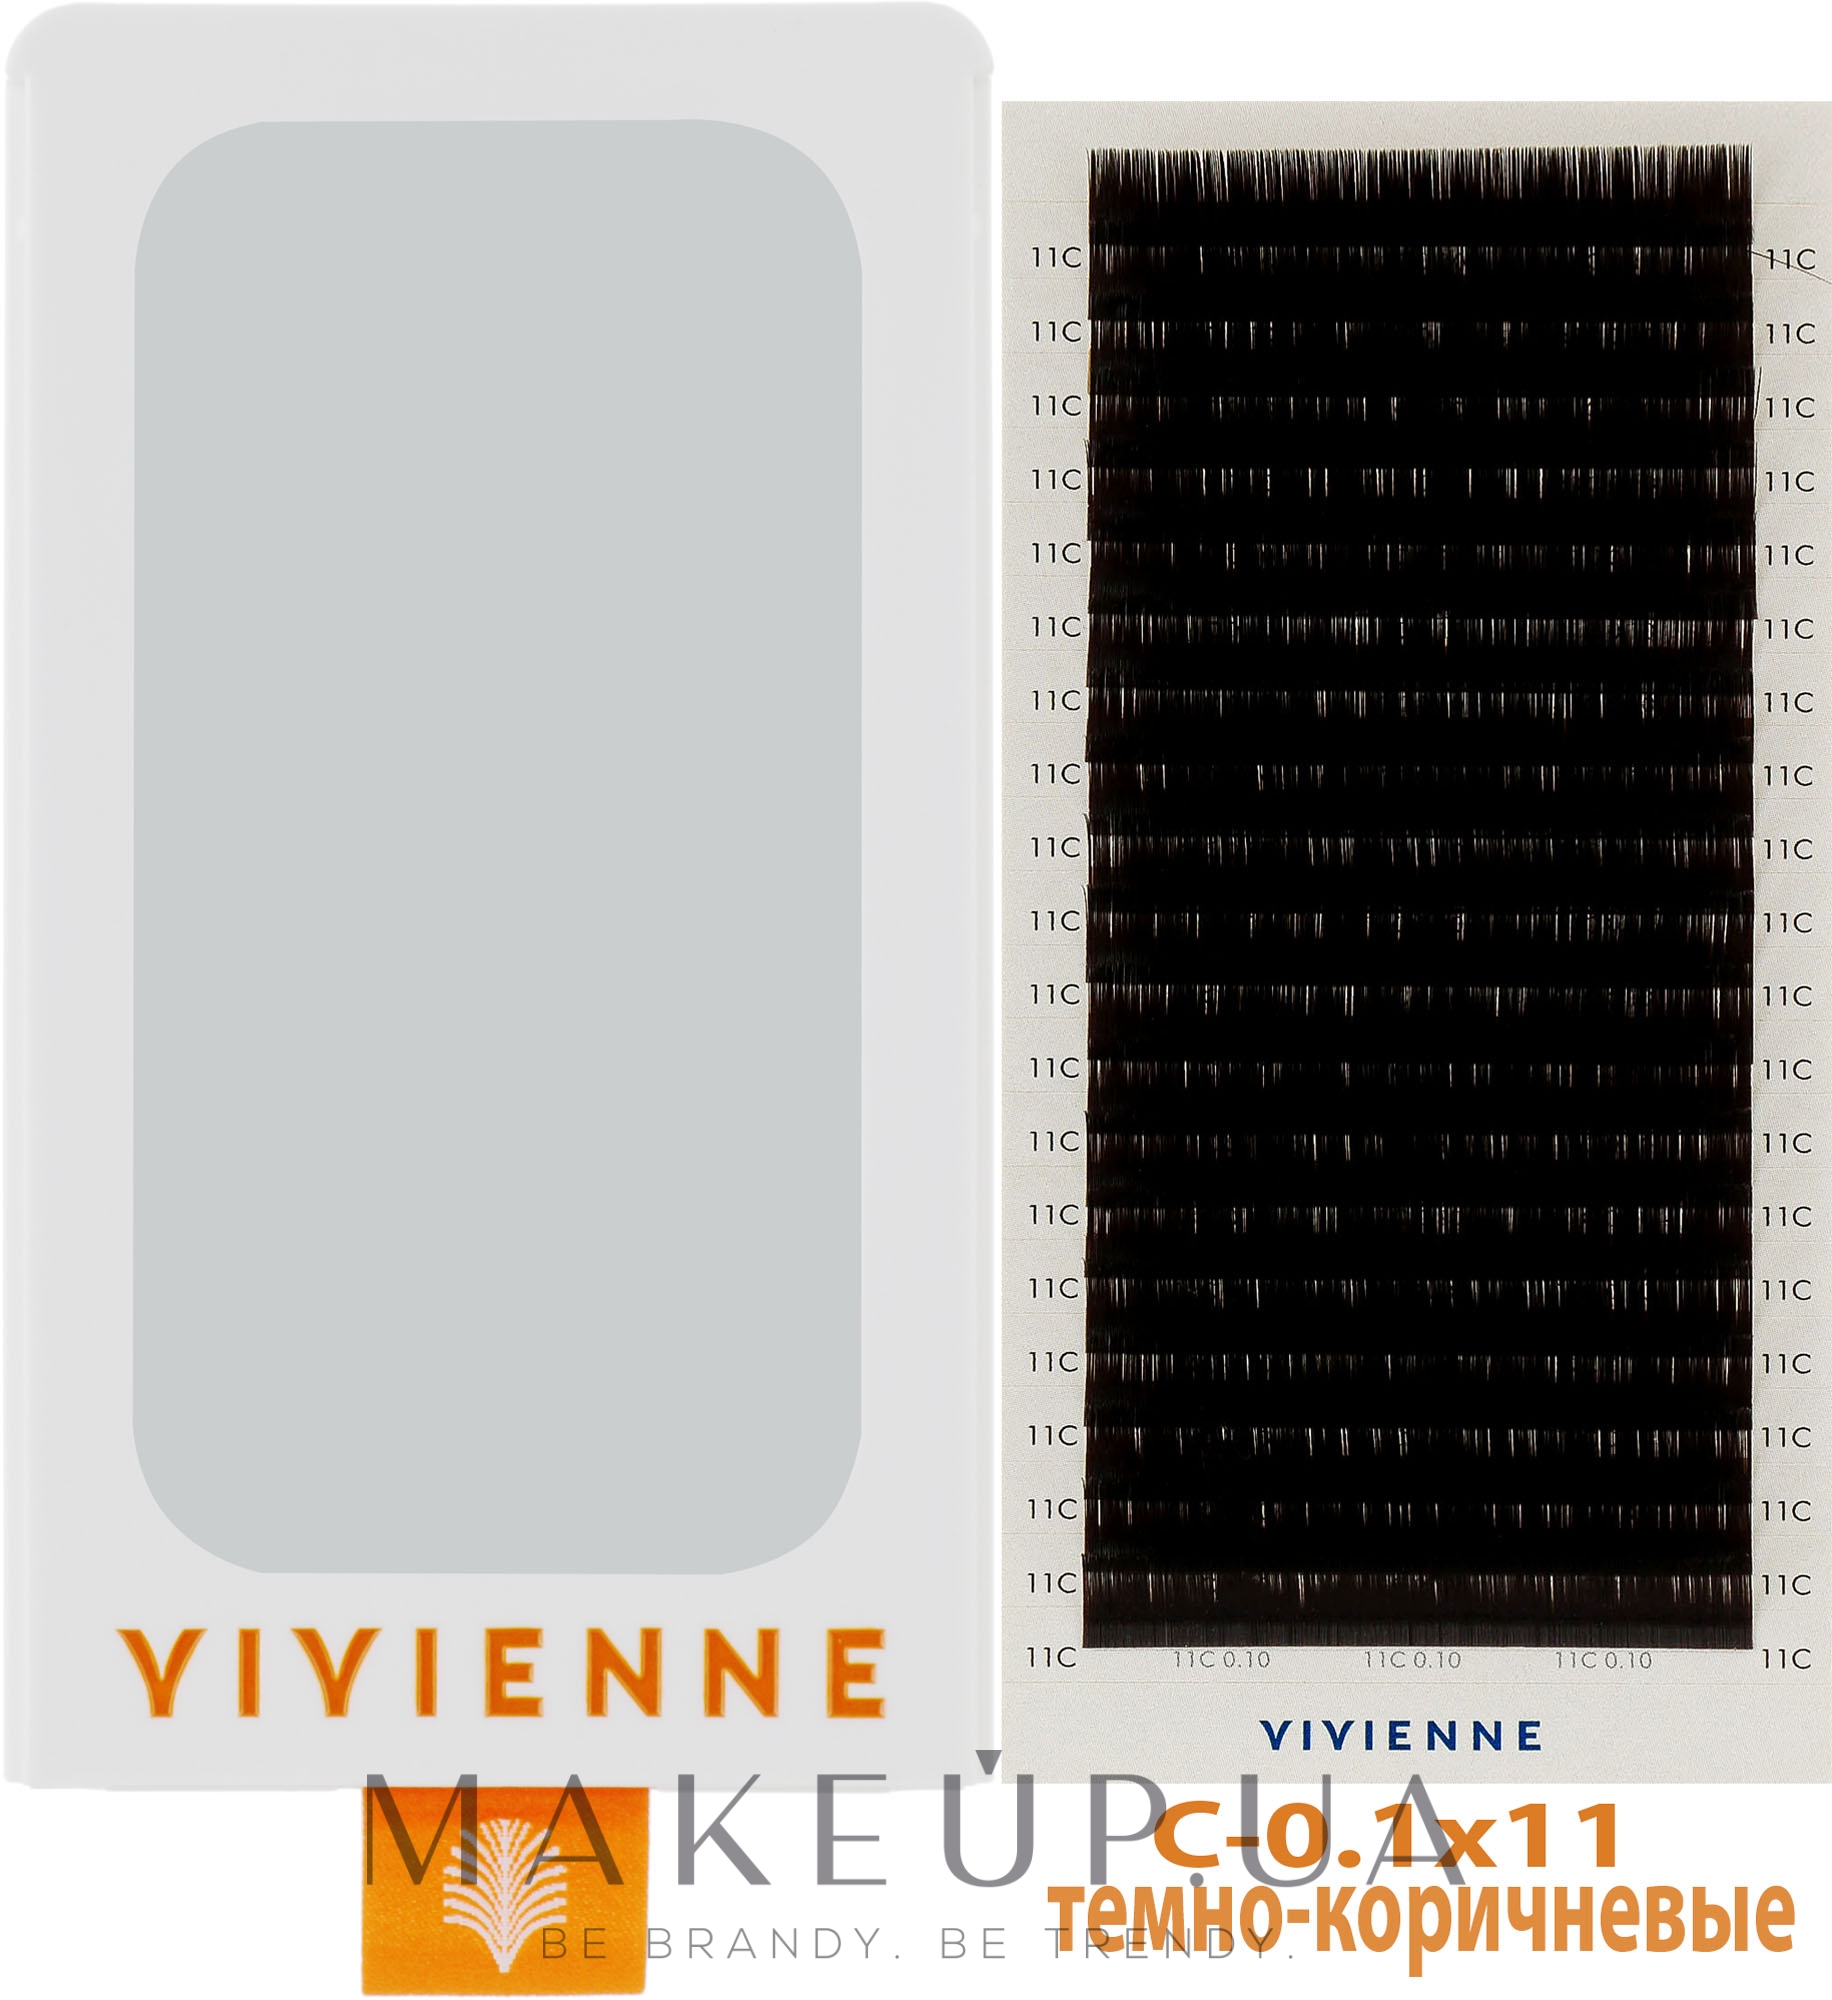 Ресницы "Elite", темно-коричневые, 20 линий (органайзер) (один размер, 0,1, C, 11) - Vivienne — фото 1уп